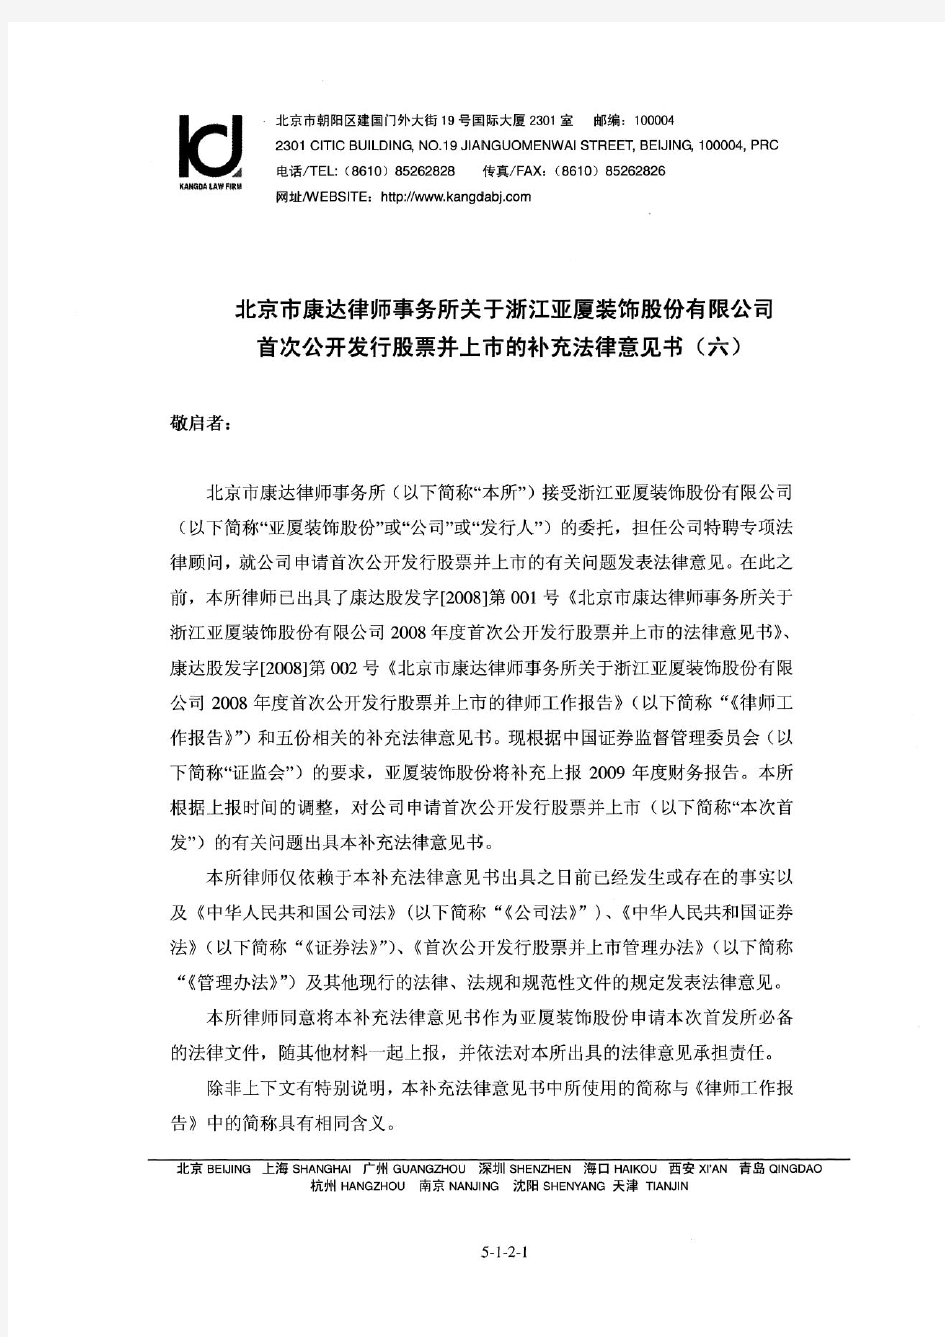 亚厦股份：北京市康达律师事务所关于公司首次公开发行股票并上市的补充法律意见书(六) 2010-03-04